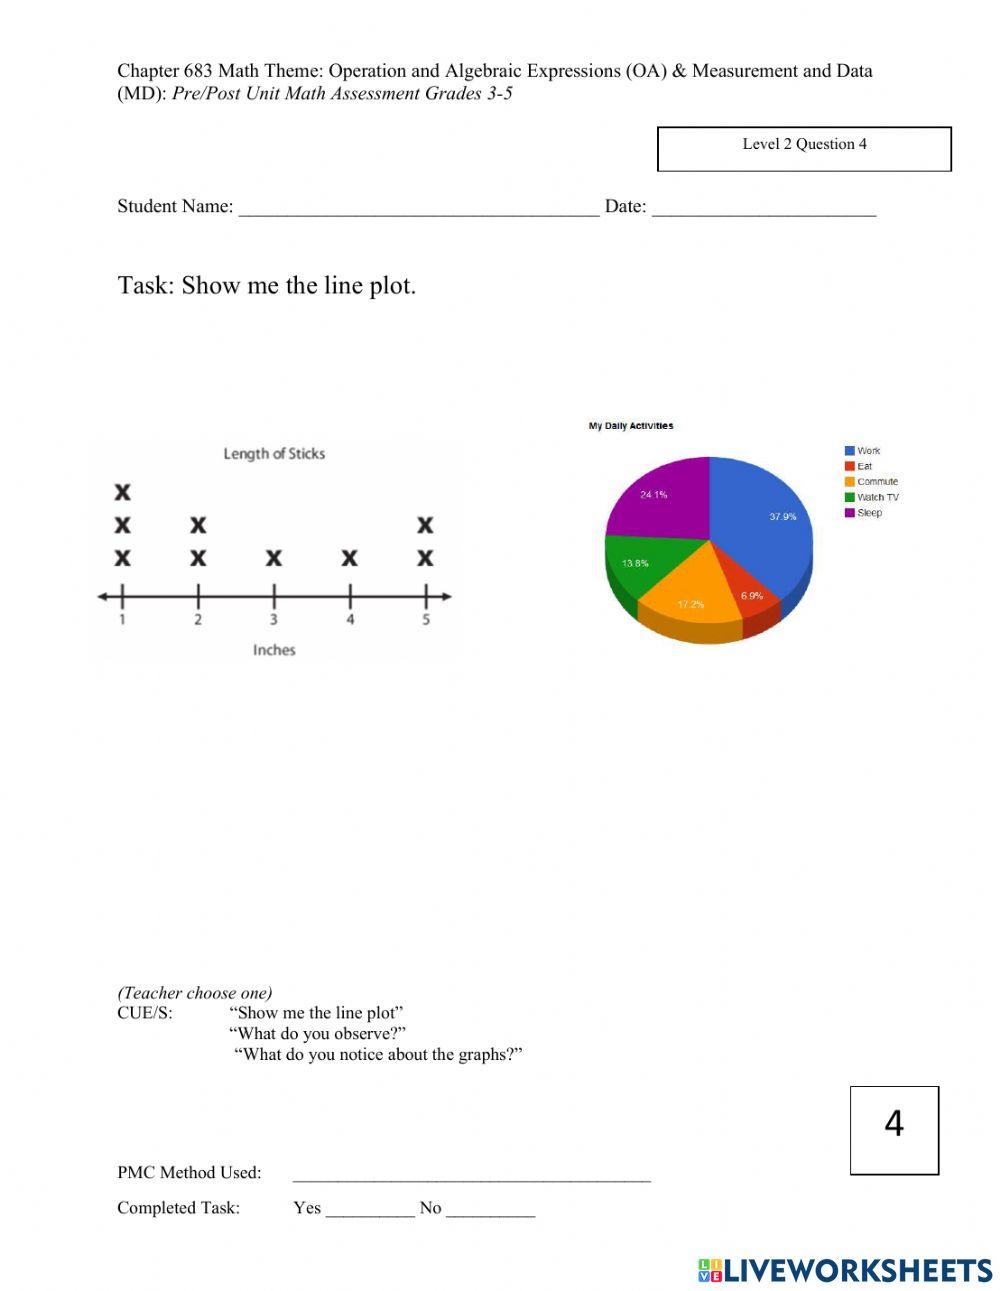 Math 3-5 Chapter 683 Assessment